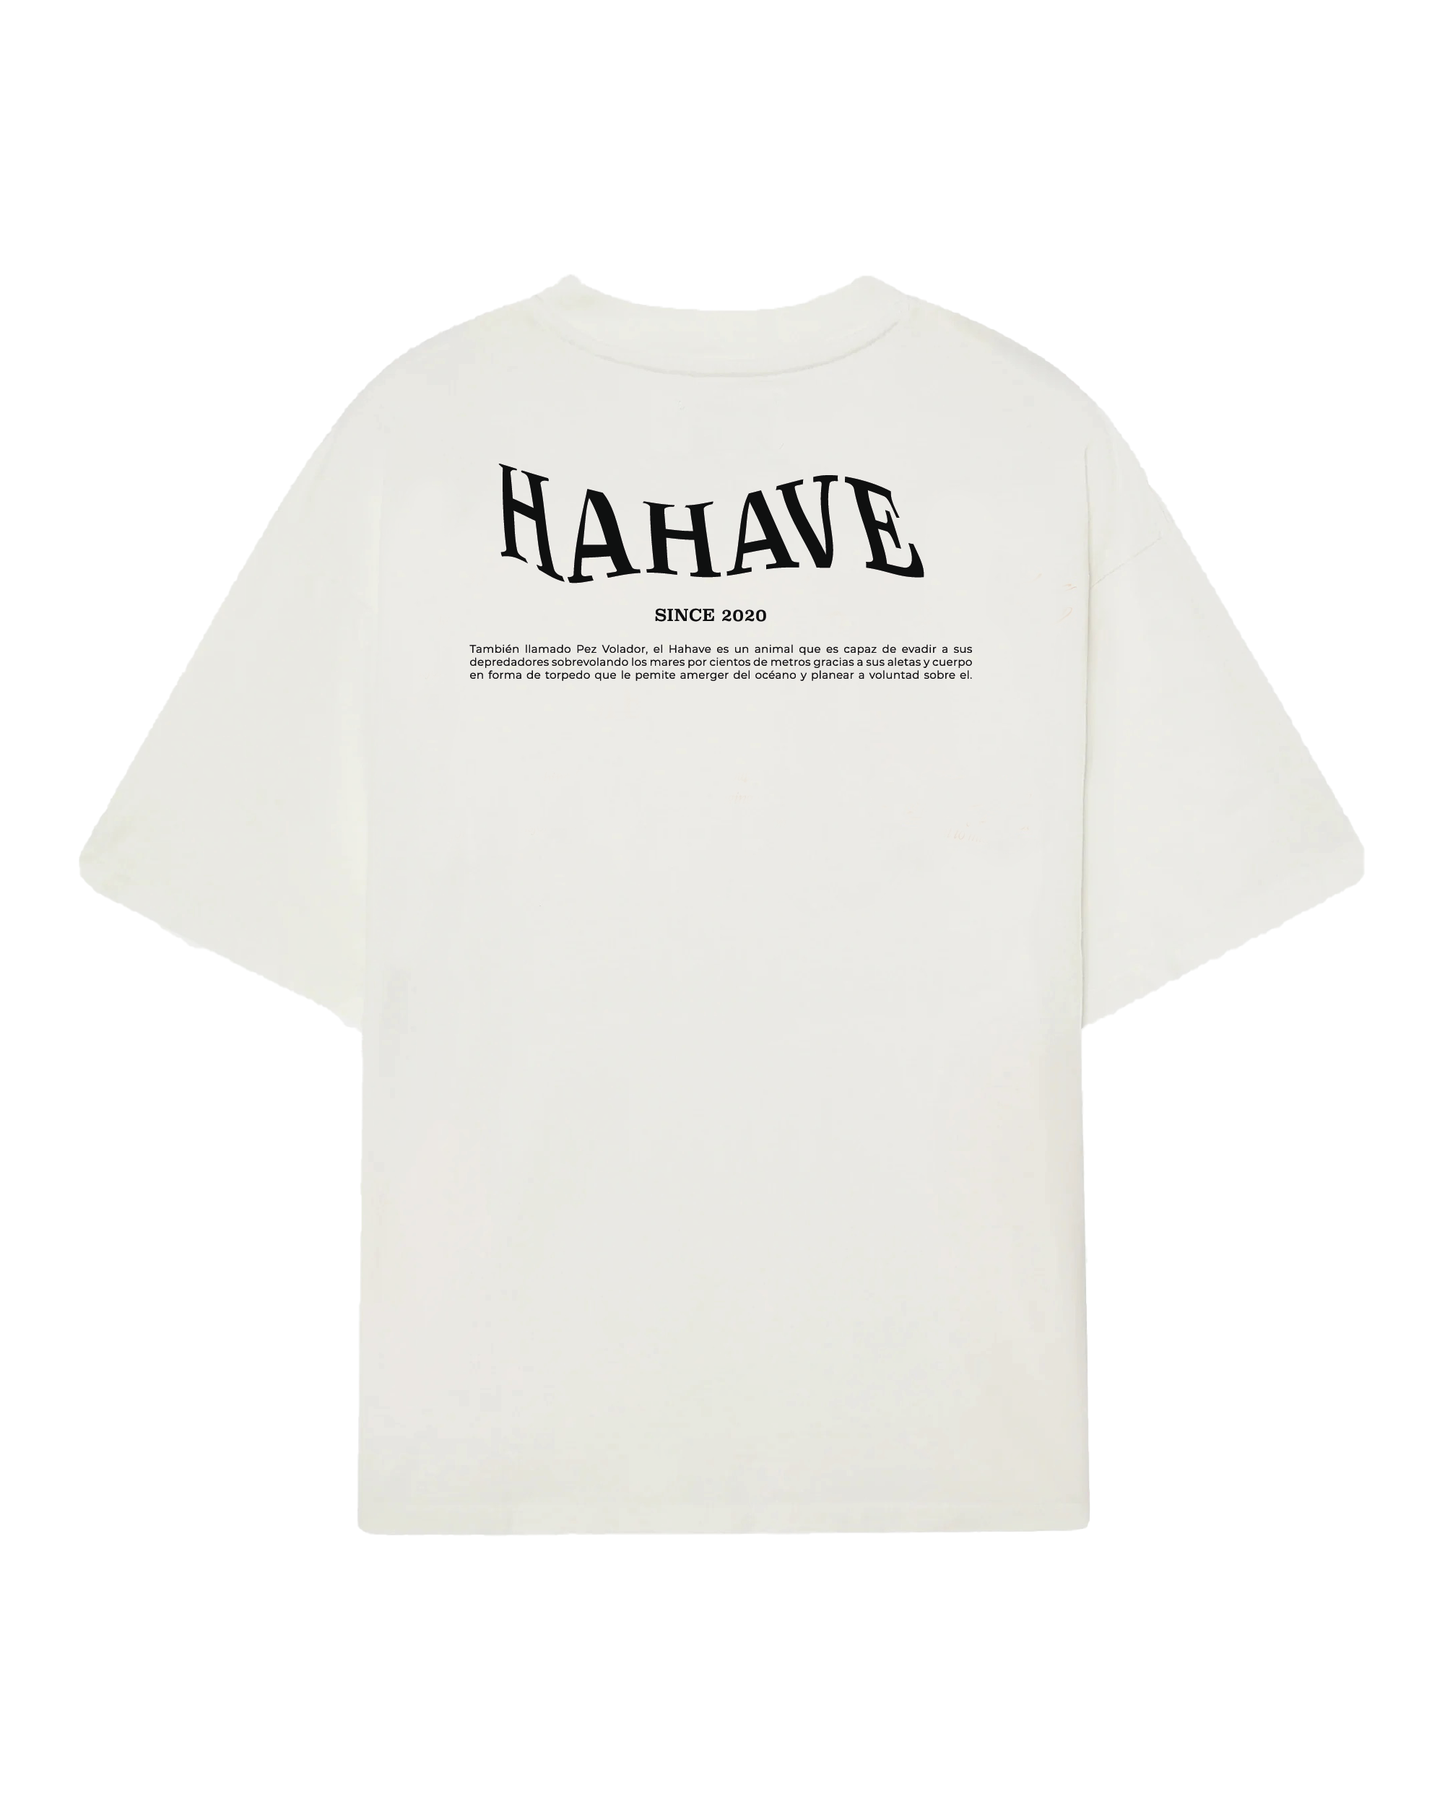 Hahave T-shirt White